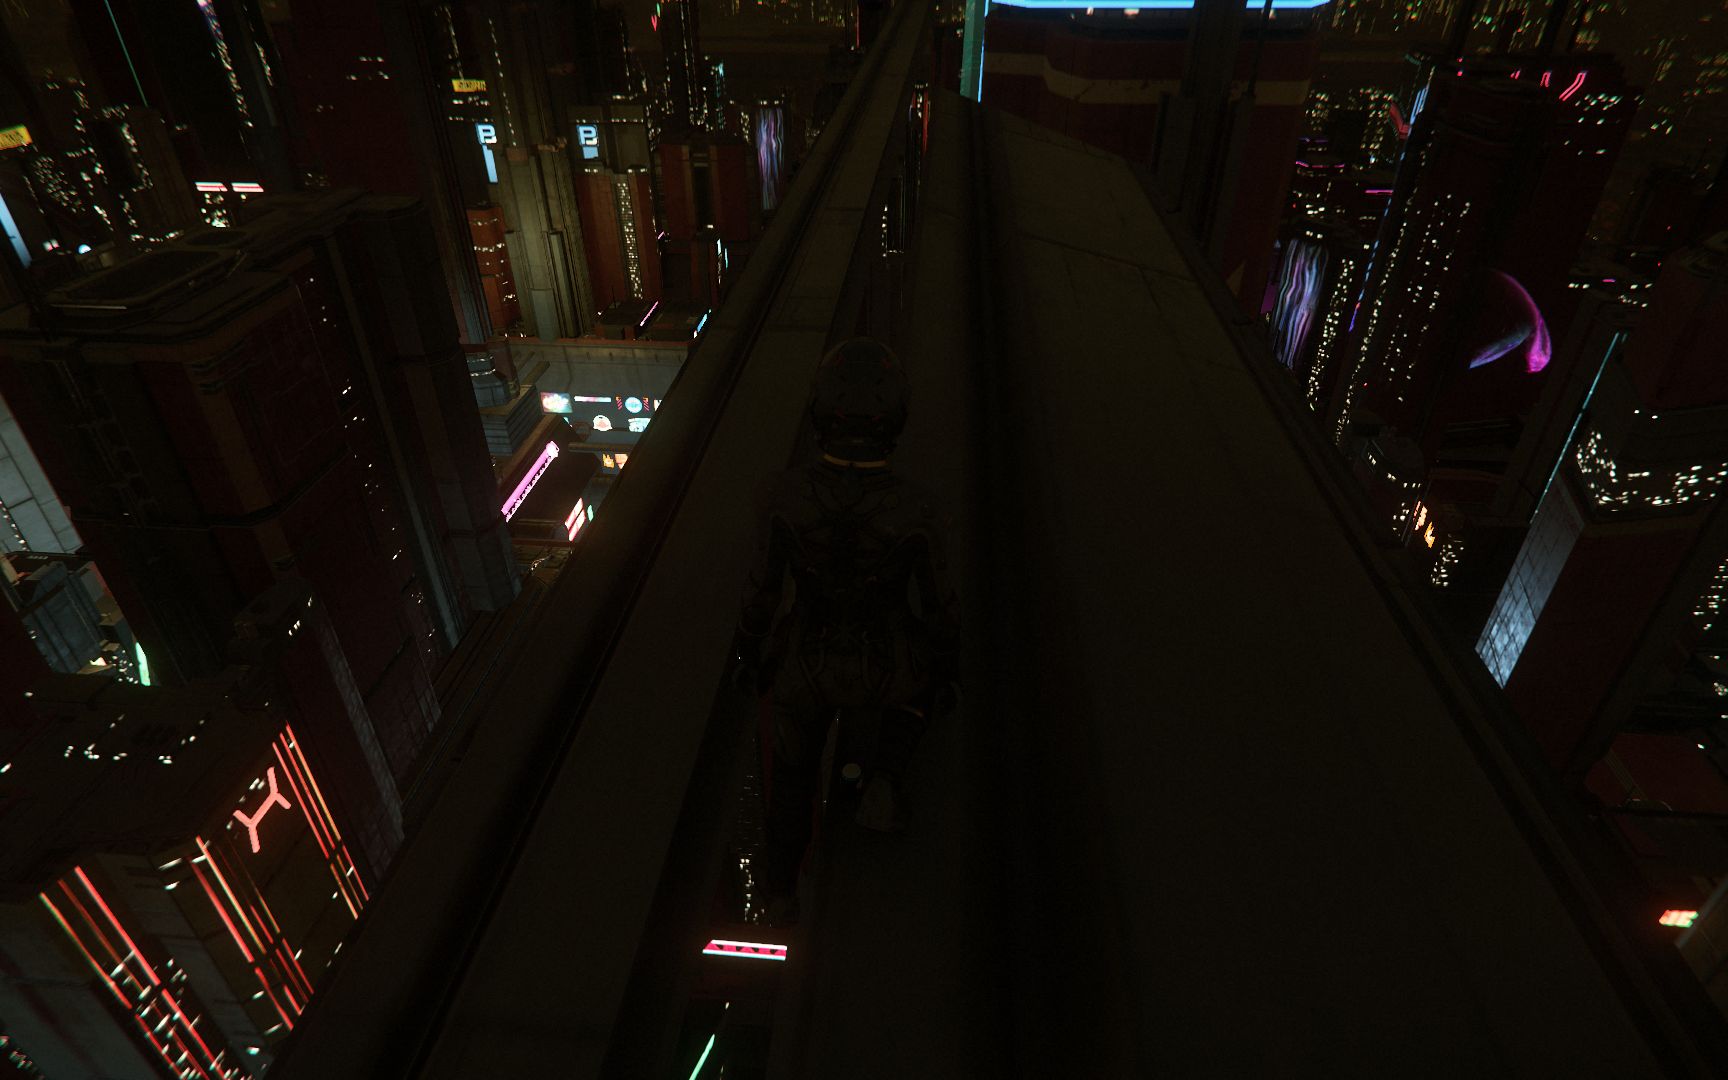 【星际公民】站在18区高楼楼顶眺望夜间美景 - 恐高症请不要尝试!